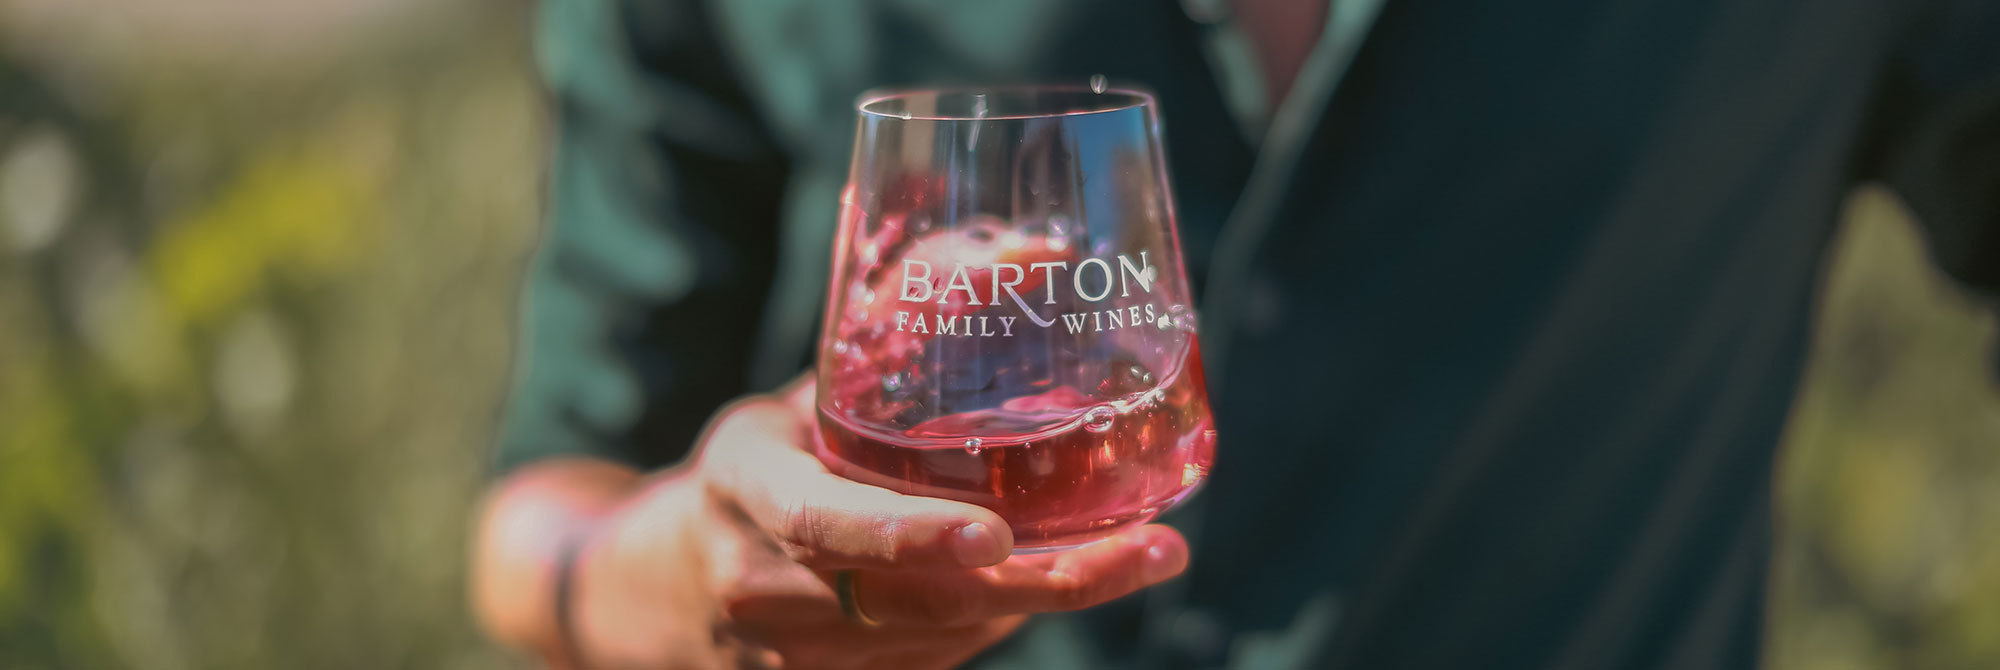 Barton Family Wines Photo